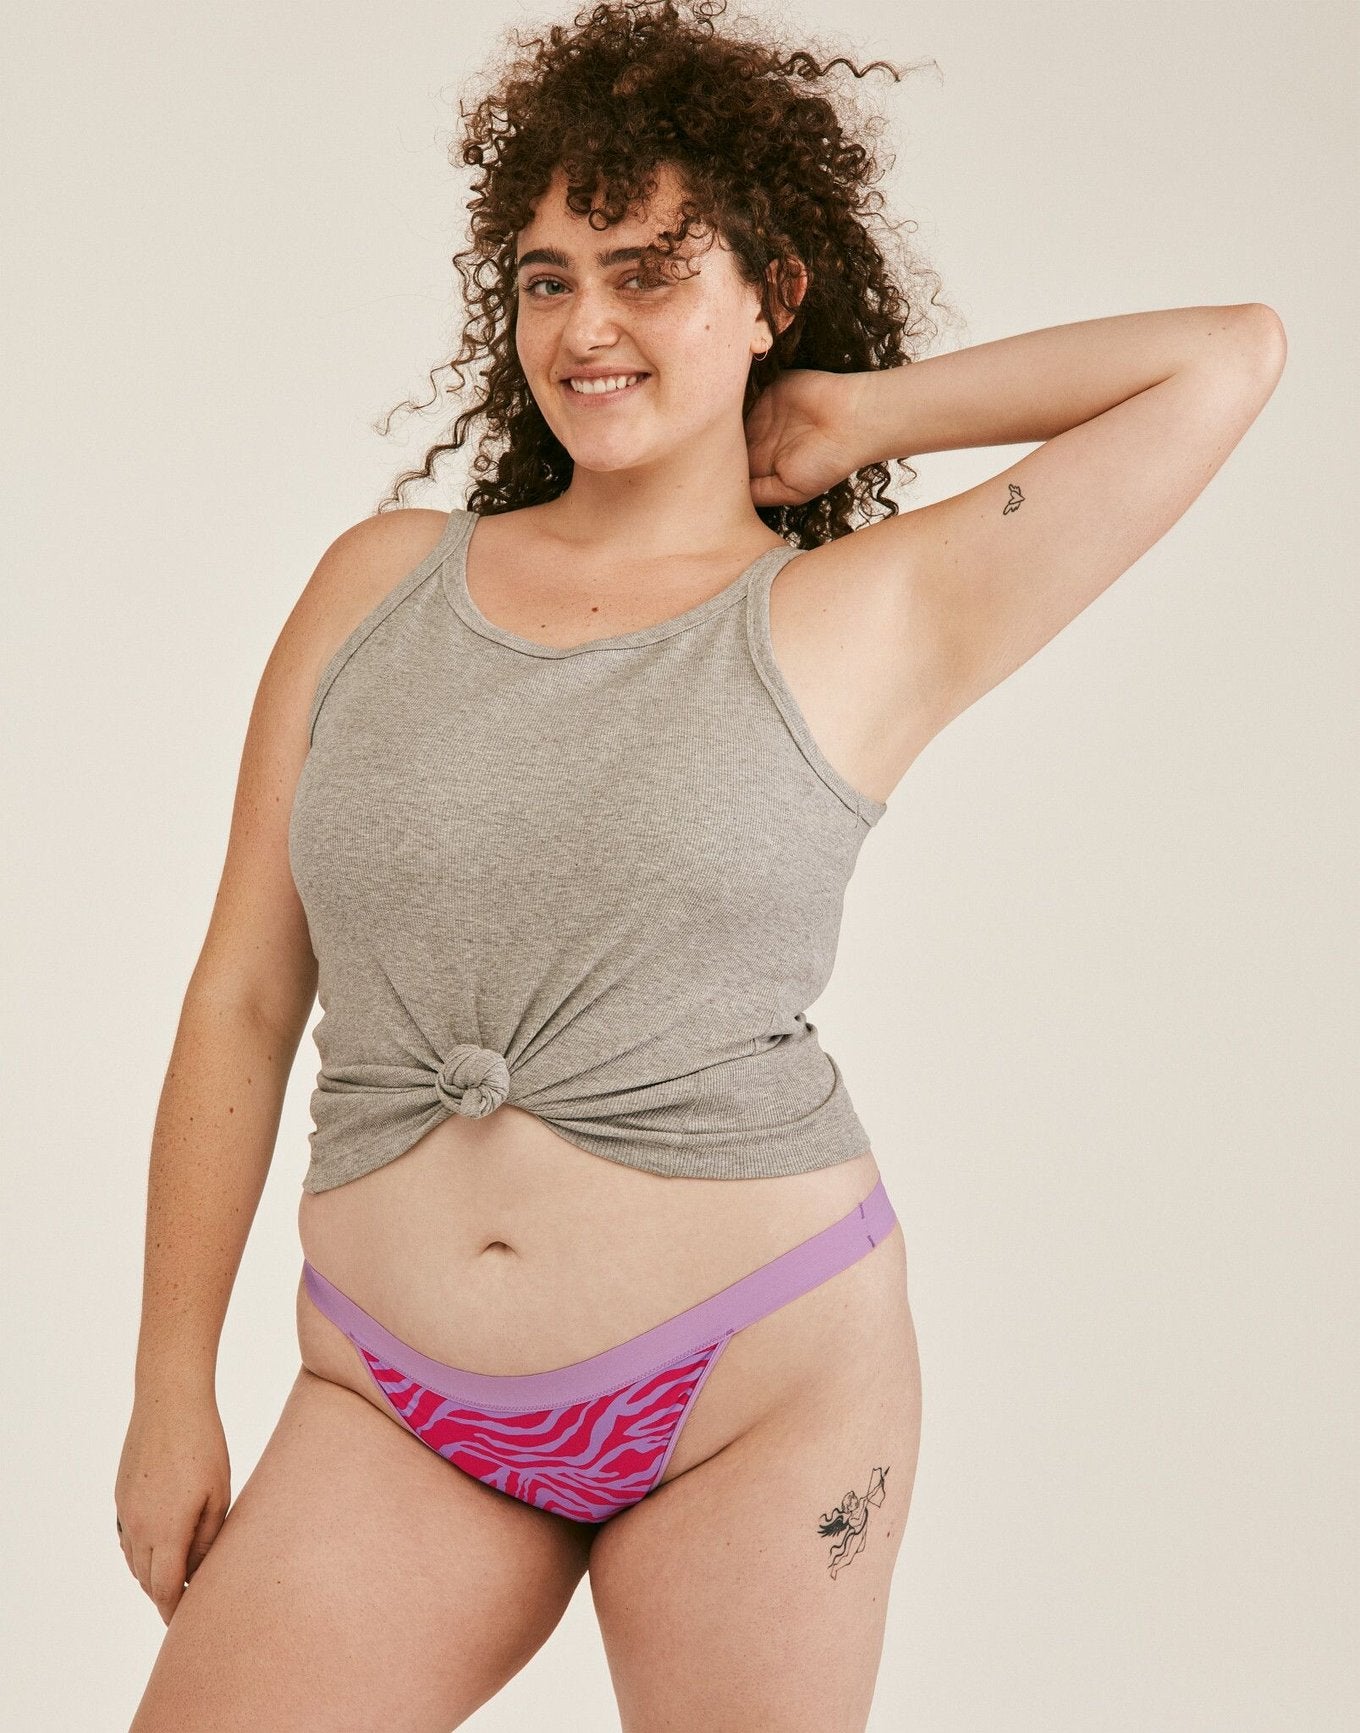 Joyja Leah period-proof panty in color Secret Safari C02 and shape thong